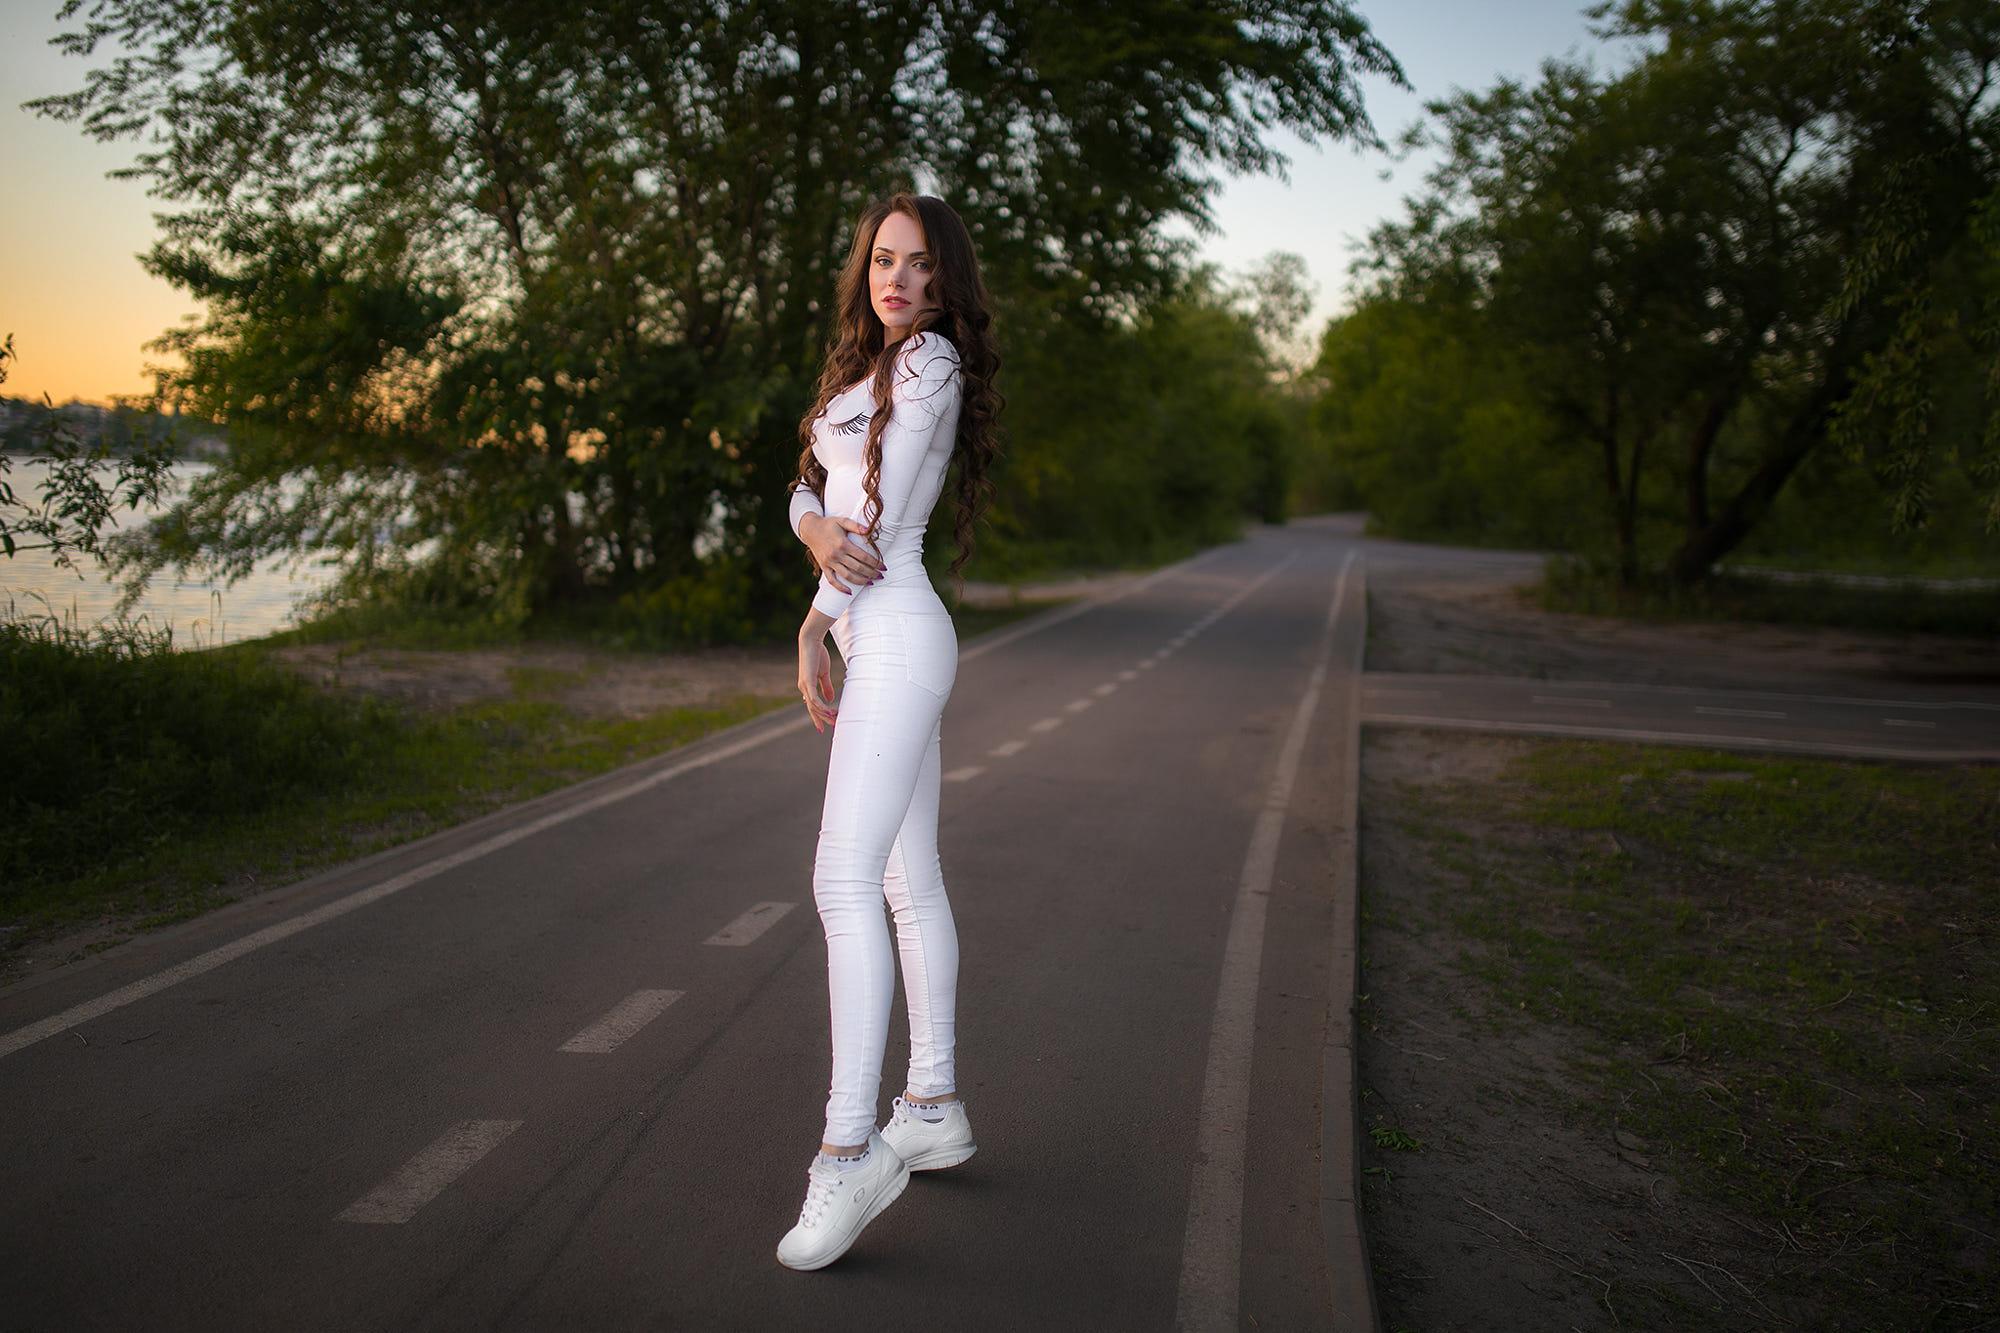 Women Road Sneakers White Clothing Trees Dmitry Sn Women Outdoors Long Hair Sunset Jeans Dmitry Shul 2000x1333